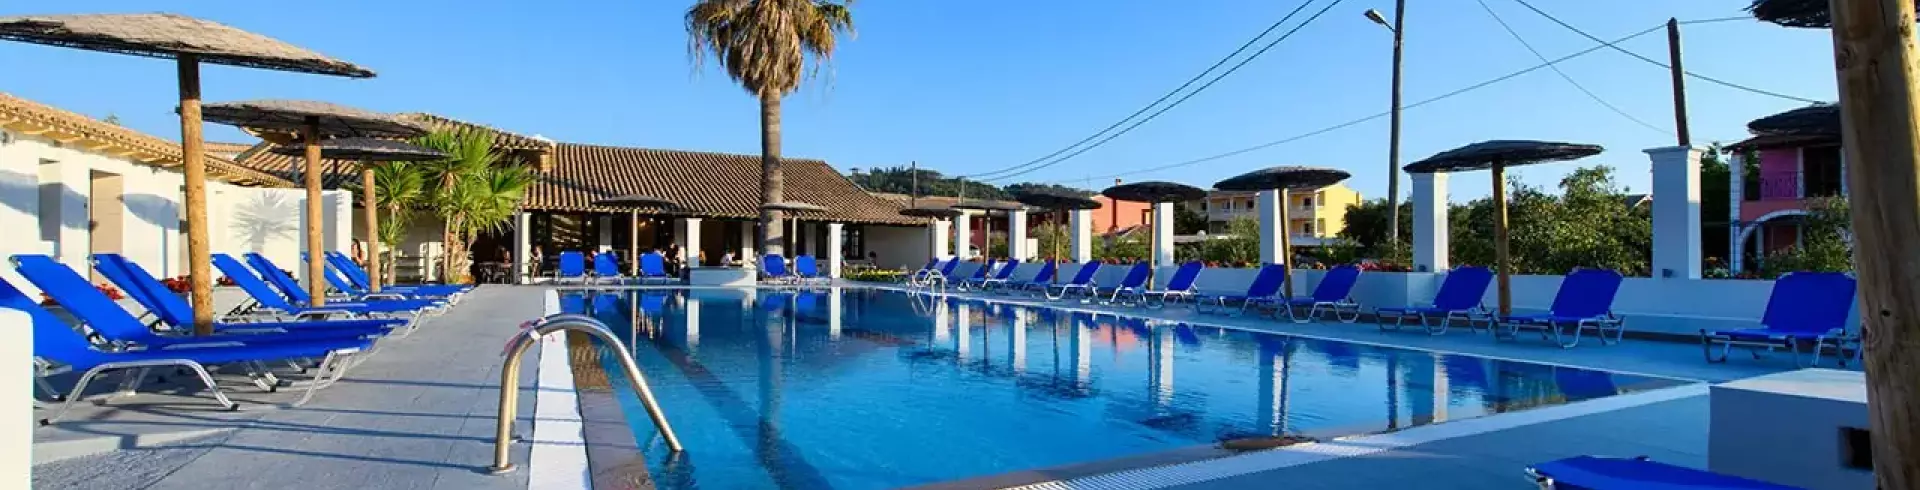 Hotel Sungate Beach